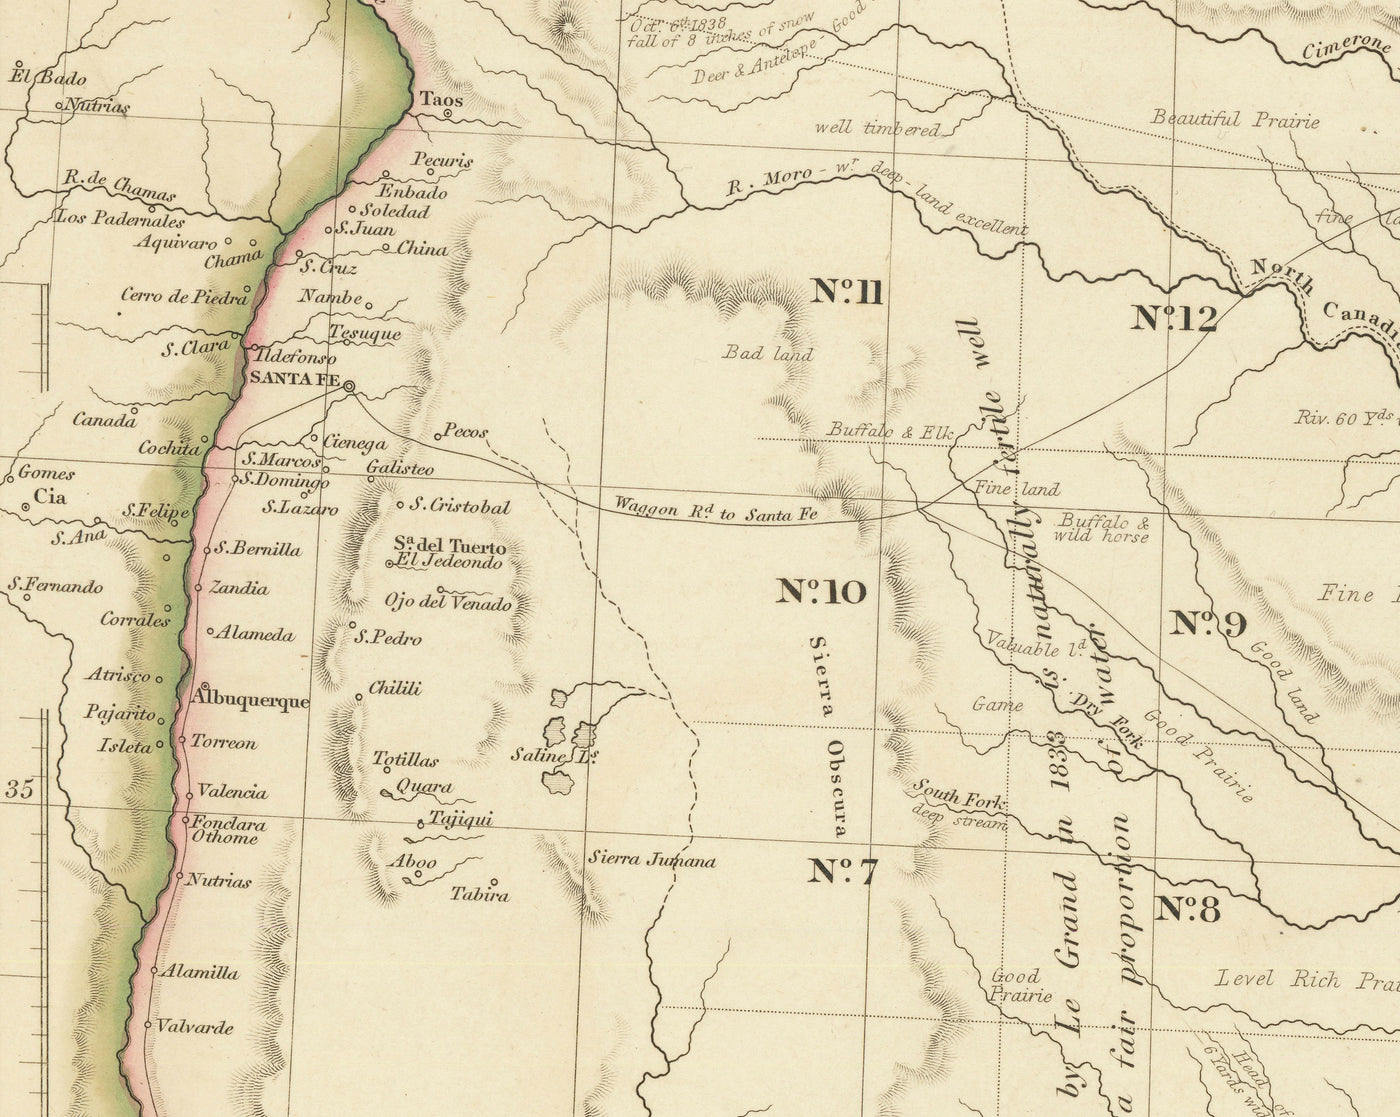 Alte Karte der Republik Texas, 1841 - Unabhängiges Land vor den USA, Houston, San Antonio, Golf von Mexiko